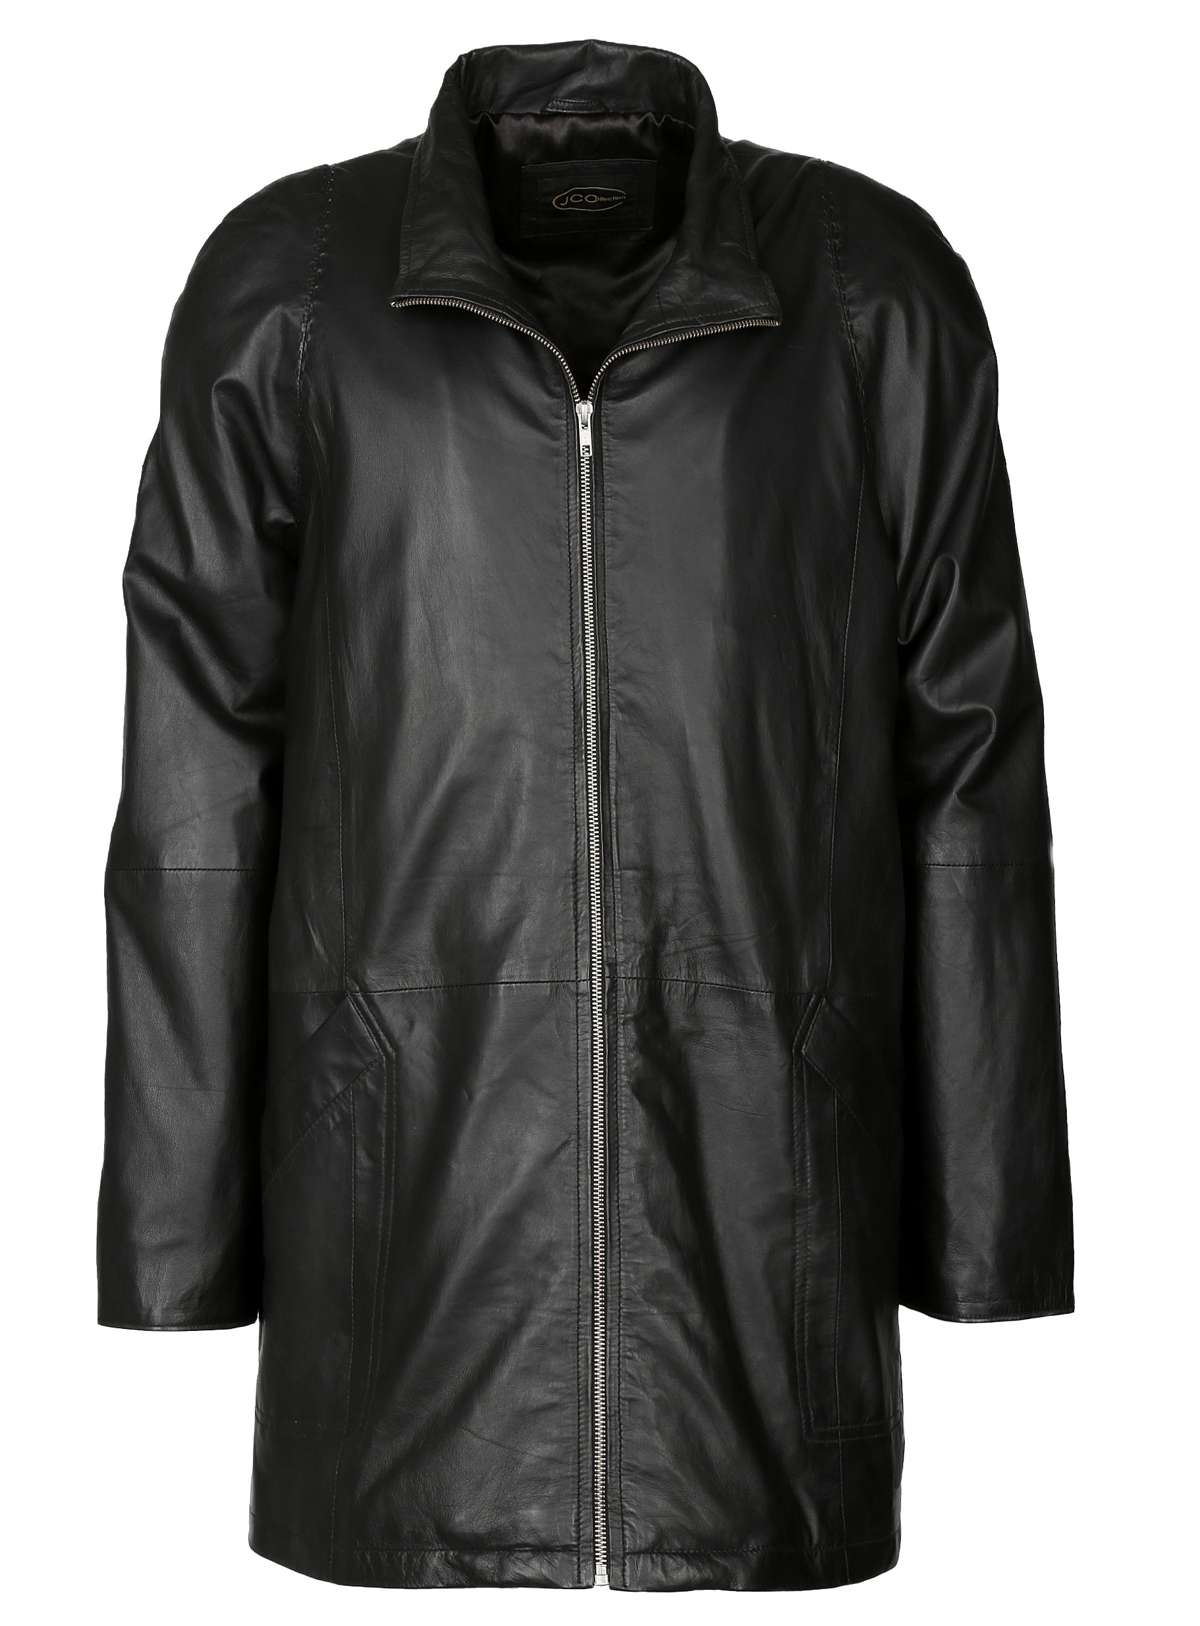 Кожаное пальто JCC, артикул 5612053899 купить в магазине одежды  LeCatalog.RU с доставкой по